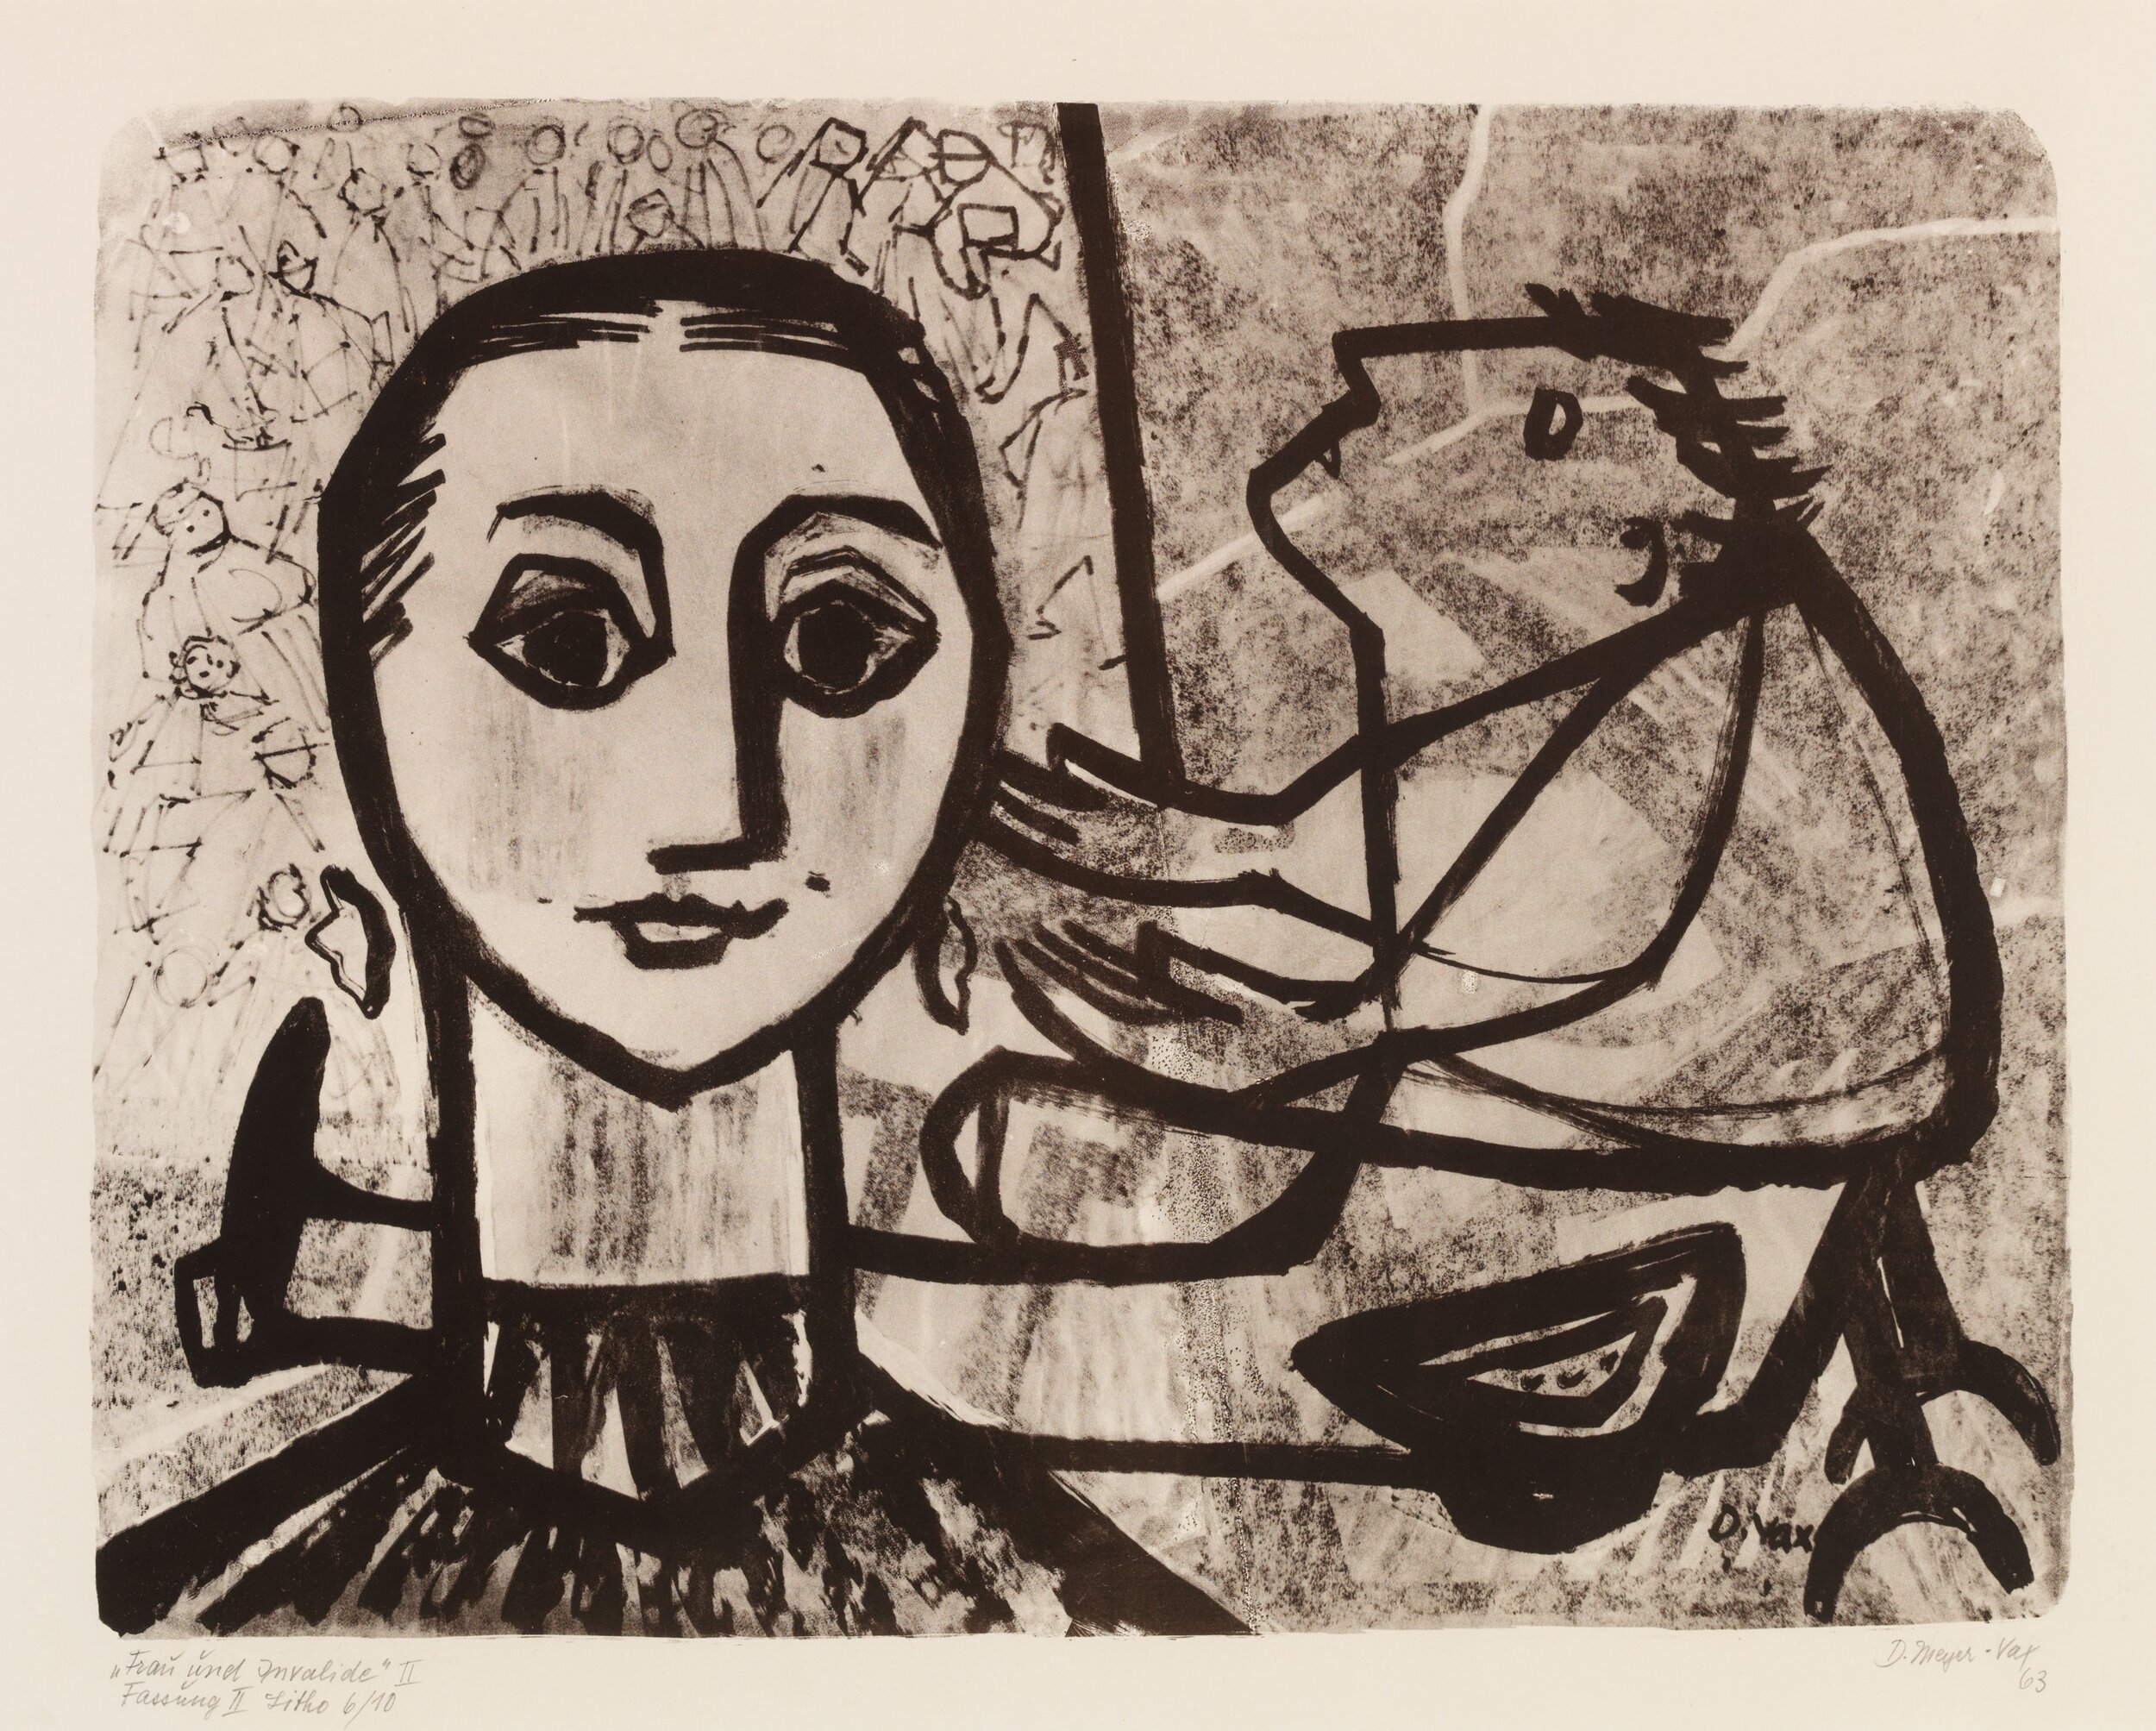 Dore Meyer-Vax, Erkenntnis II (Frau und Invalide), 1963, Lithografie auf Papier, 42,5 x 55 cm (Motiv), Sammlung Sauer. © Kunstvilla, Annette Kradisch